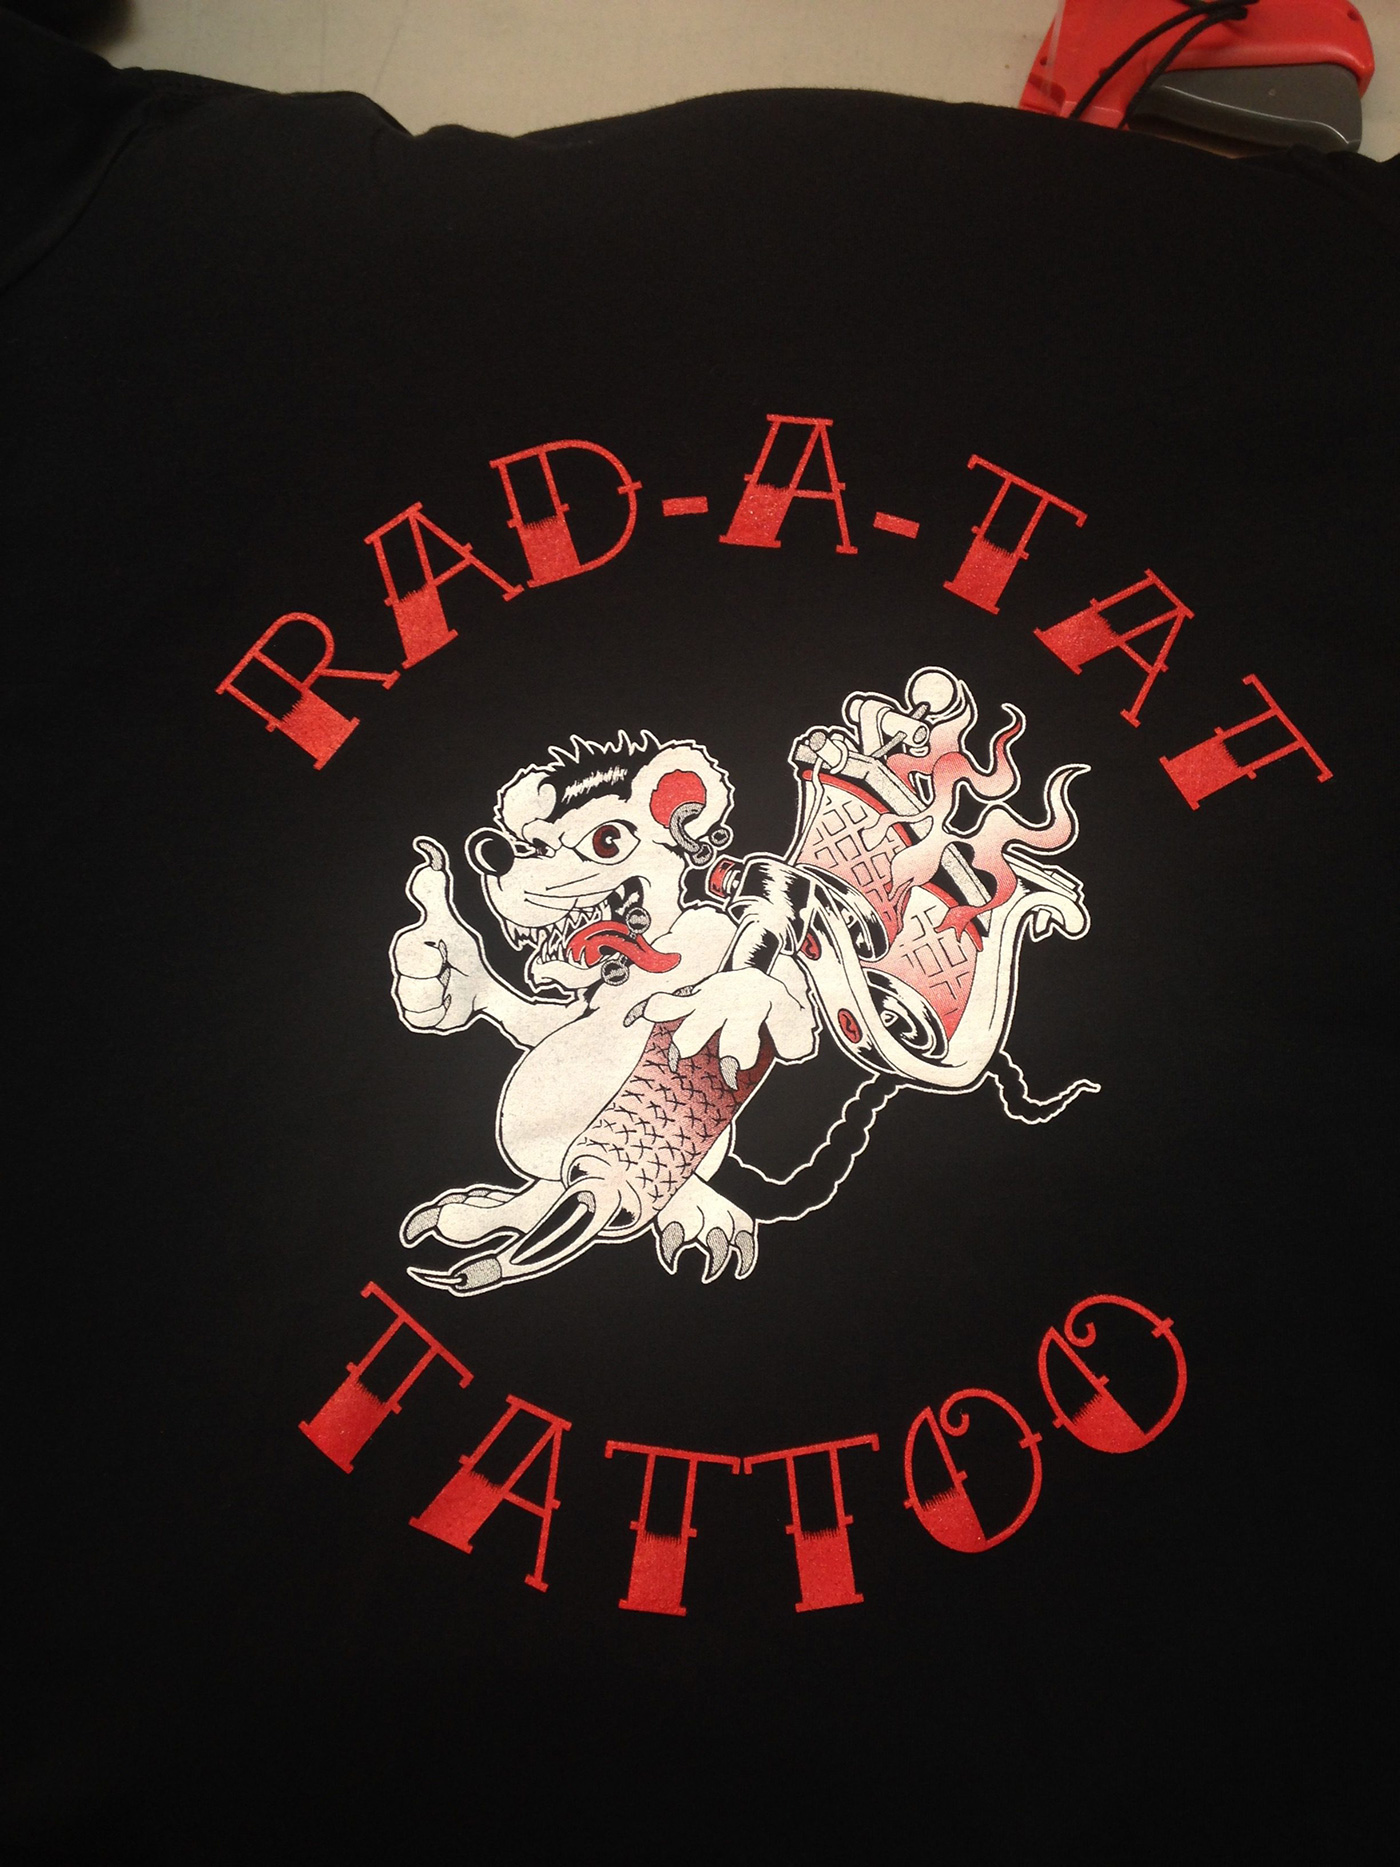 Rad-a-tat shirts